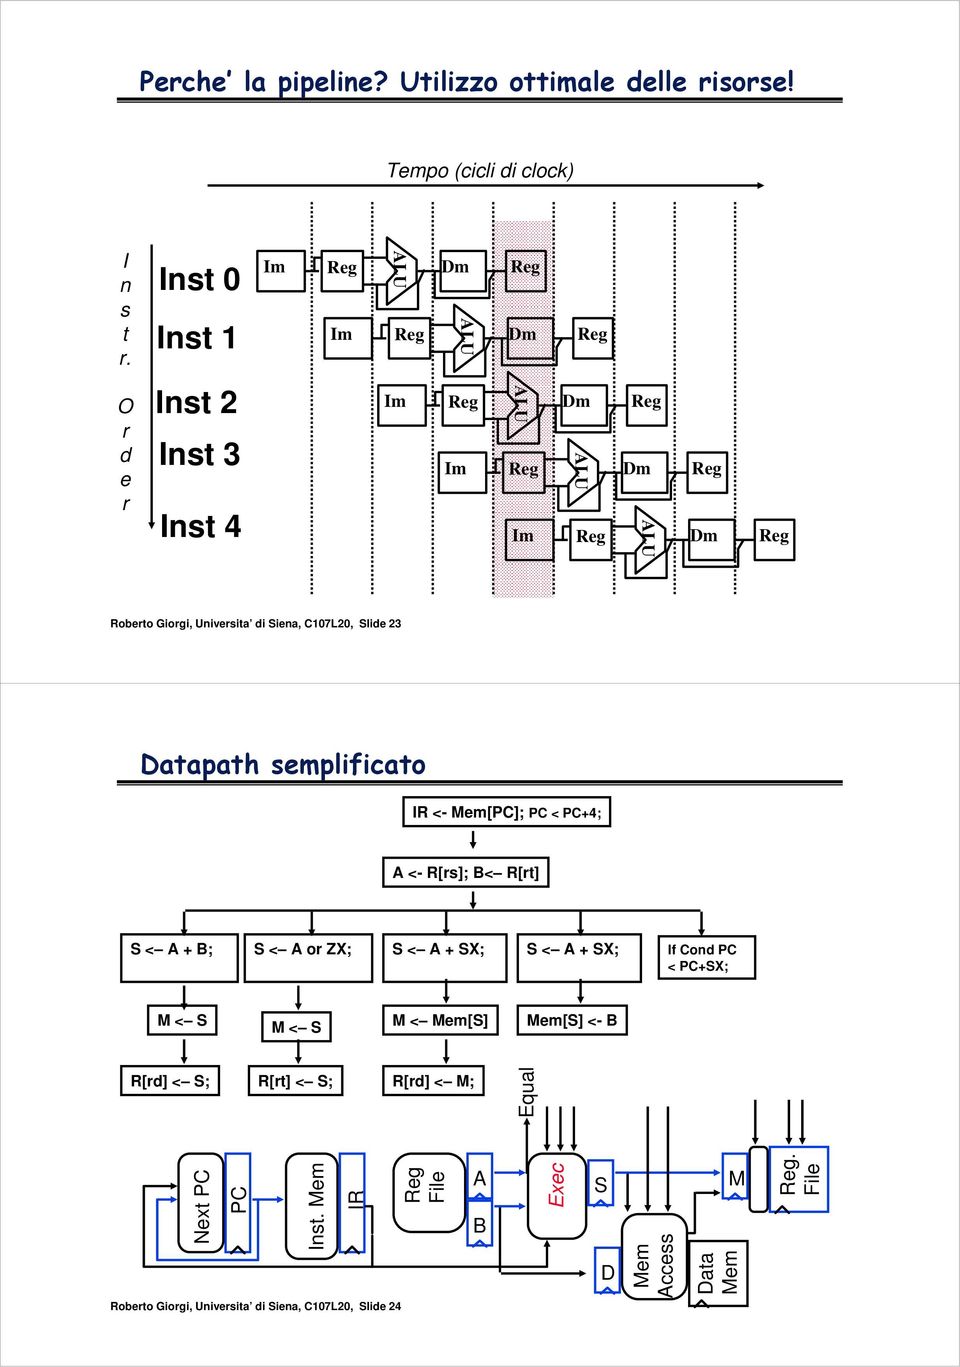 di Siena, C107L20, Slide 23 Datapath semplificato IR <- [PC]; PC < PC+4; A <- R[rs]; B< R[rt] S < A + B; S < A or ZX; S < A + SX; S < A + SX;